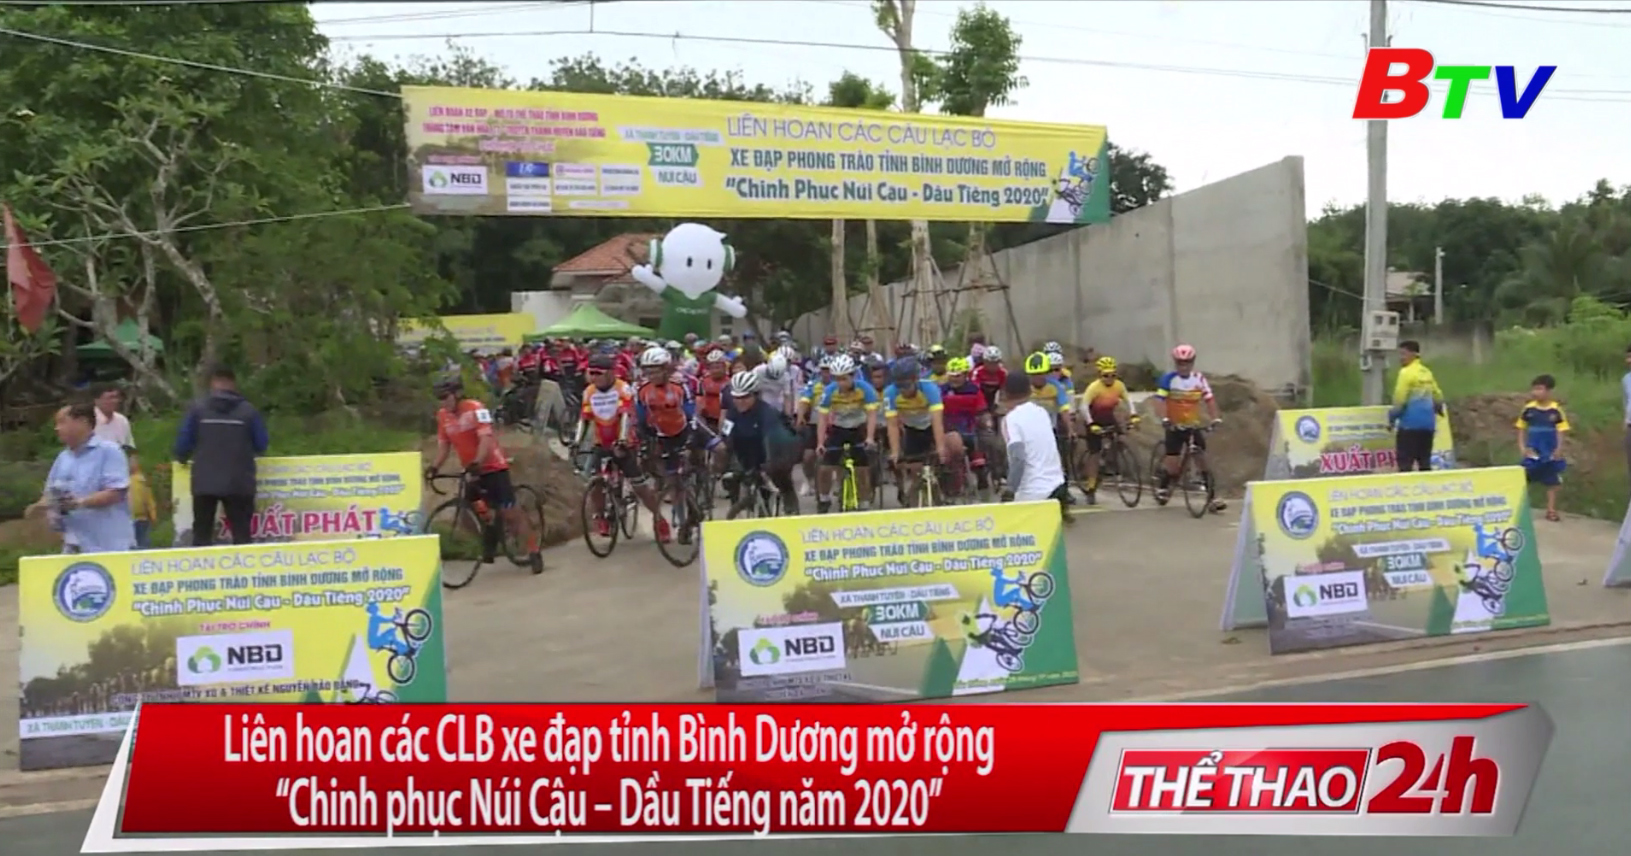 Liên hoan các Câu lạc bộ xe đạp phong trào tỉnh Bình Dương mở rộng “Chinh phục Núi Cậu - Dầu Tiếng năm 2020”